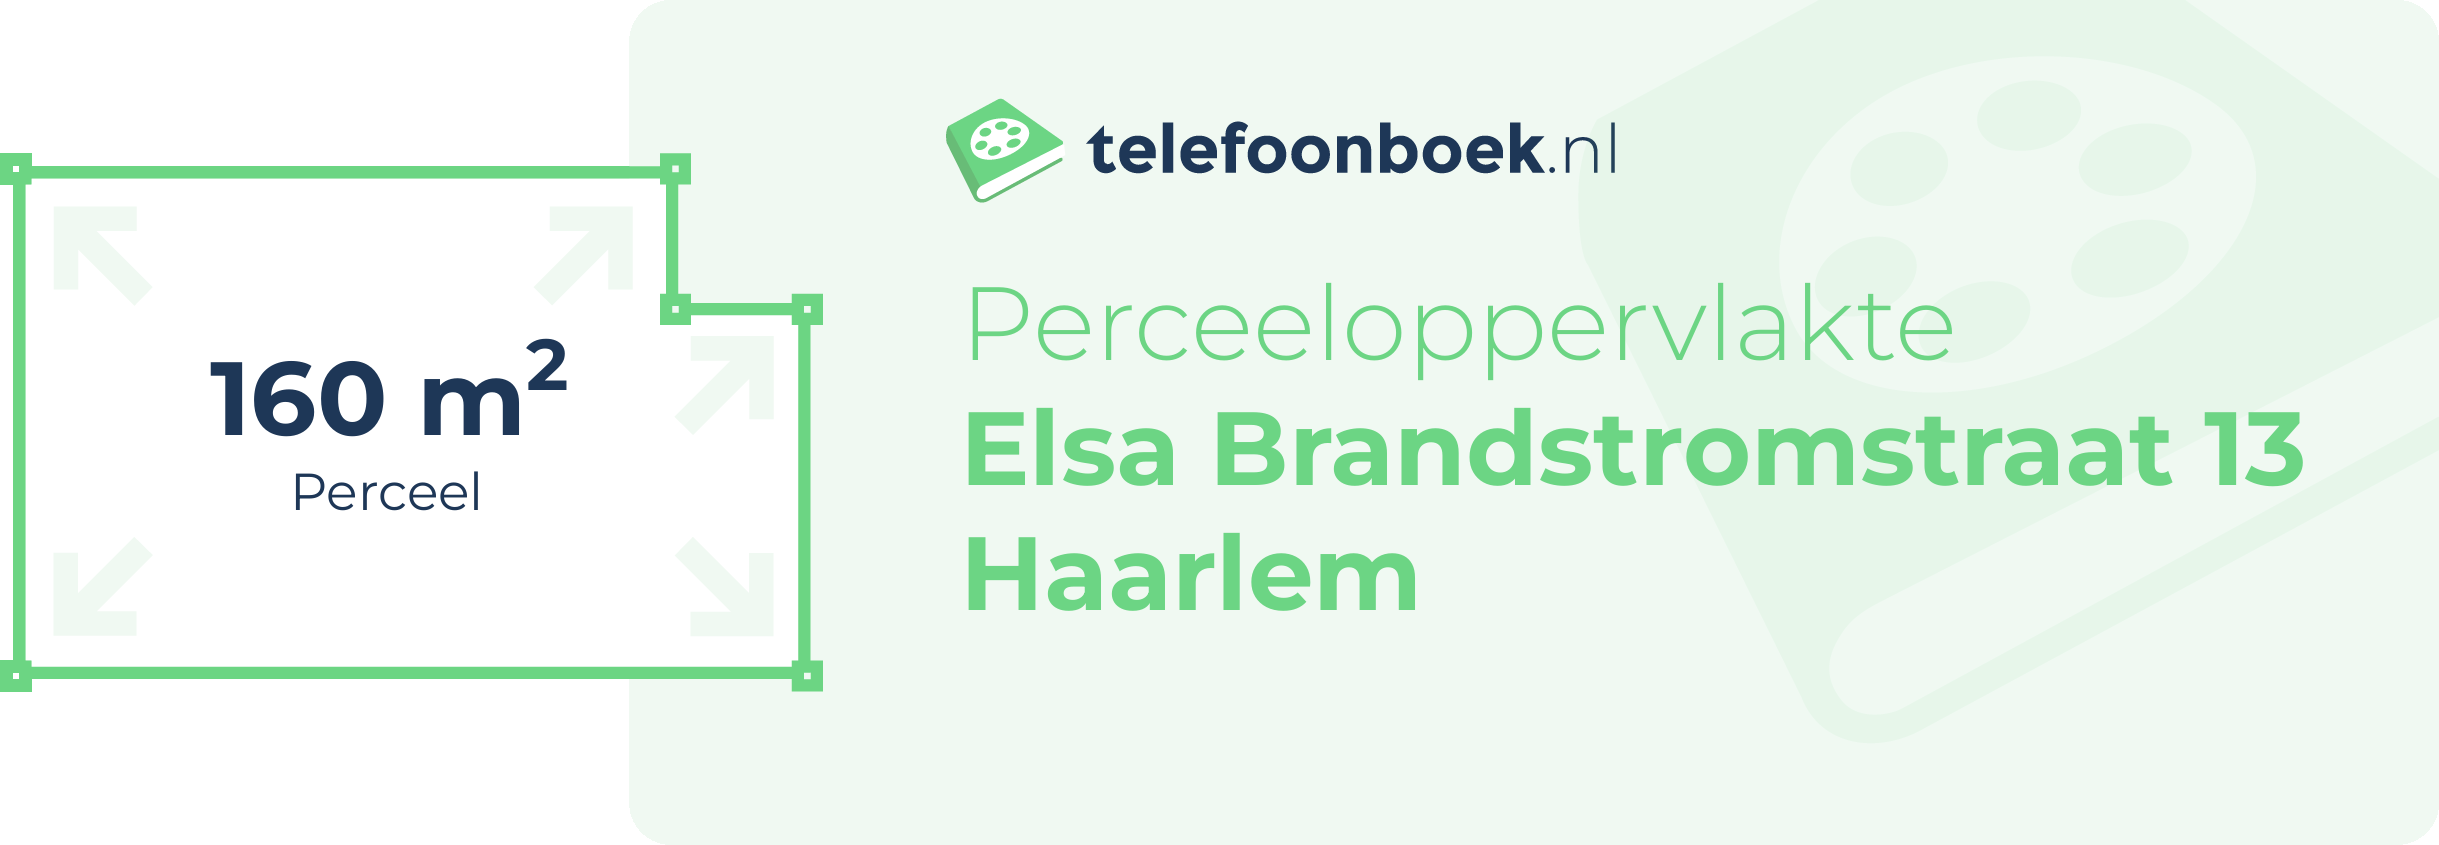 Perceeloppervlakte Elsa Brandstromstraat 13 Haarlem